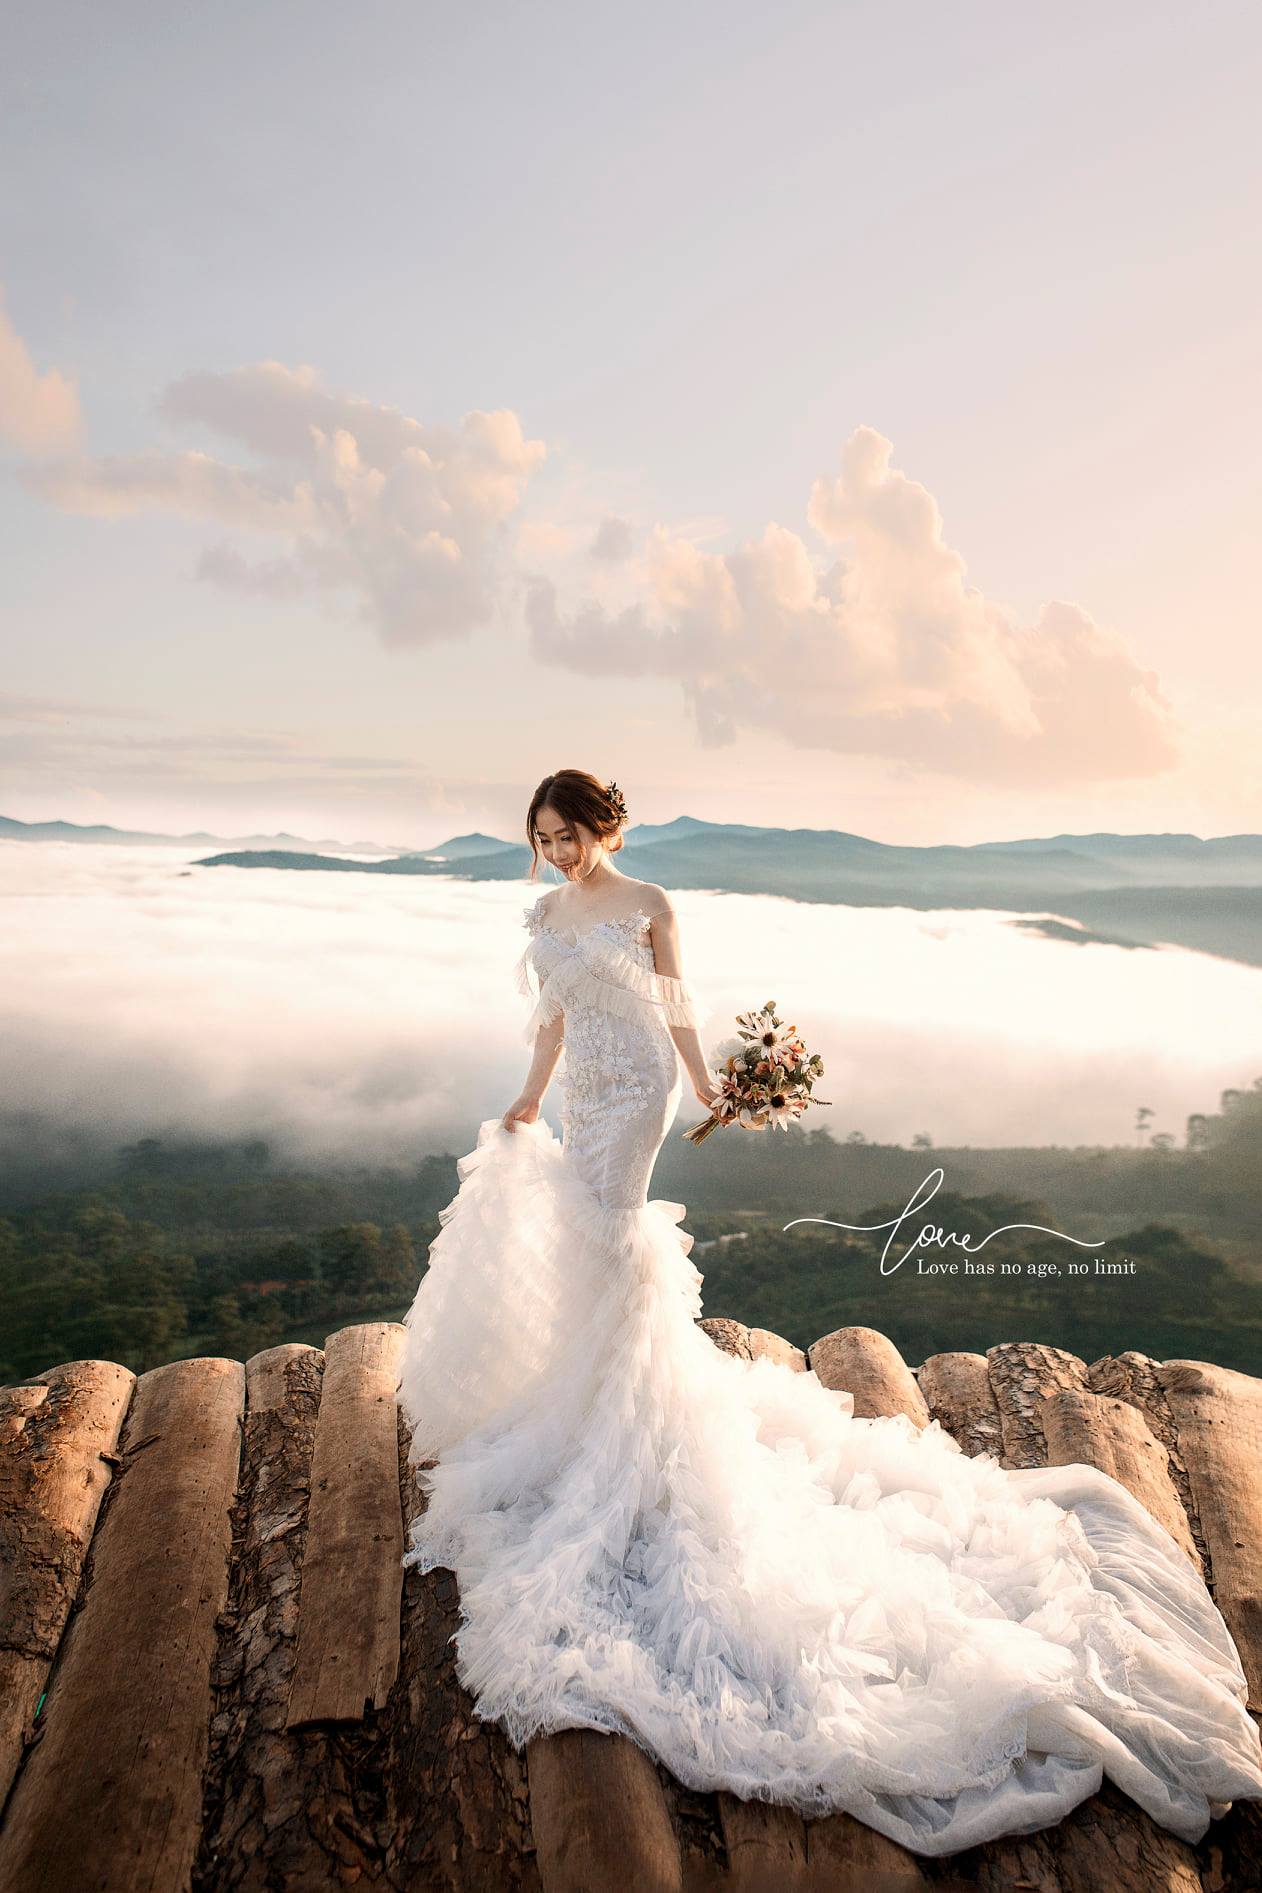 Cầu đất săn mây Đà Lạt còn là 1 địa điểm chụp hình cưới vô cùng hấp dẫn nhé!